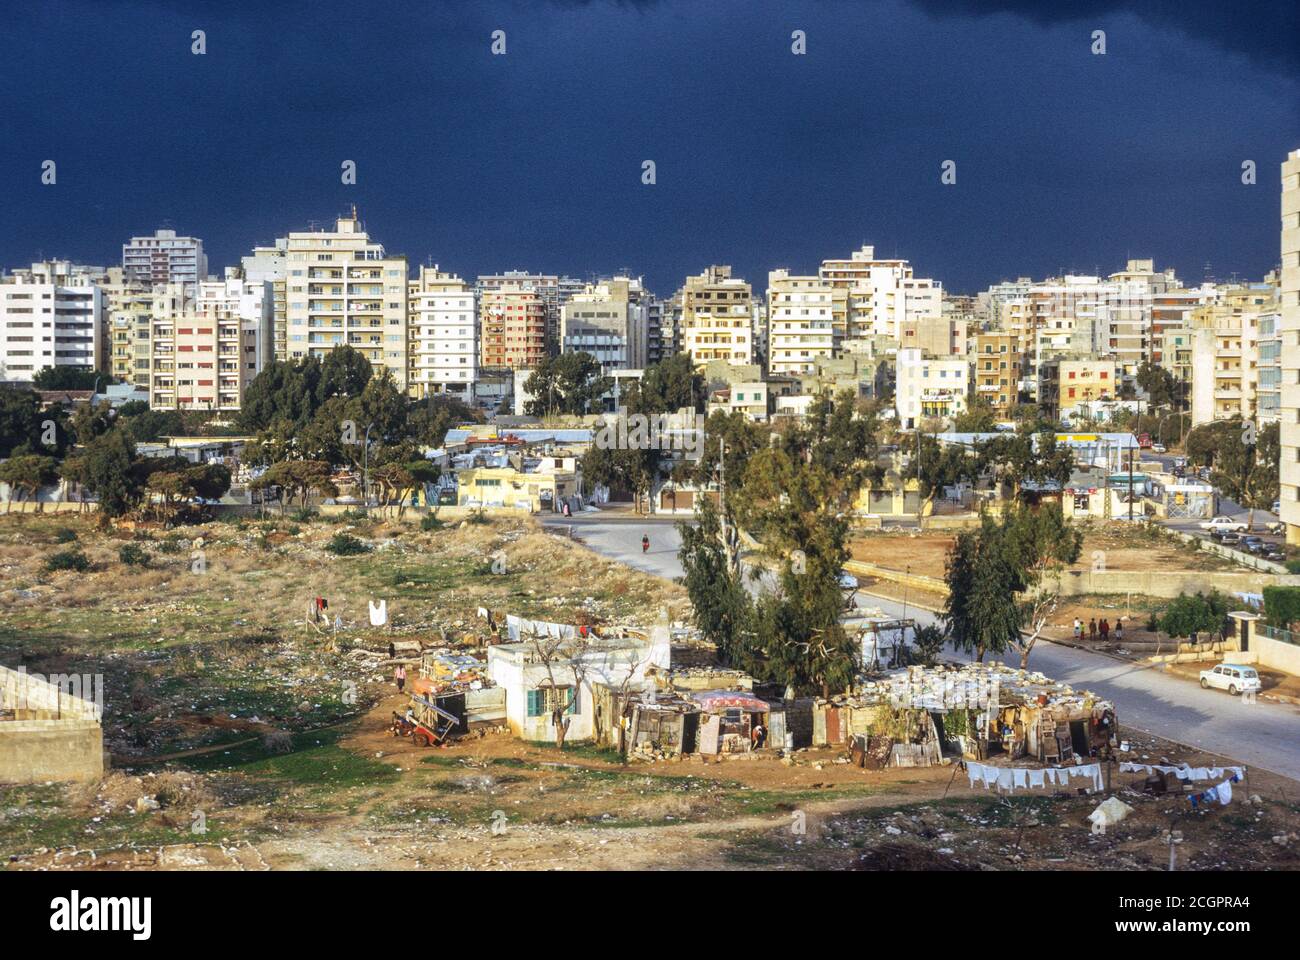 Beirut, Líbano. Casas de Refugiados palestinos en primer plano, edificios de apartamentos libaneses en segundo plano. Fotografiado en enero de 1972. Foto de stock